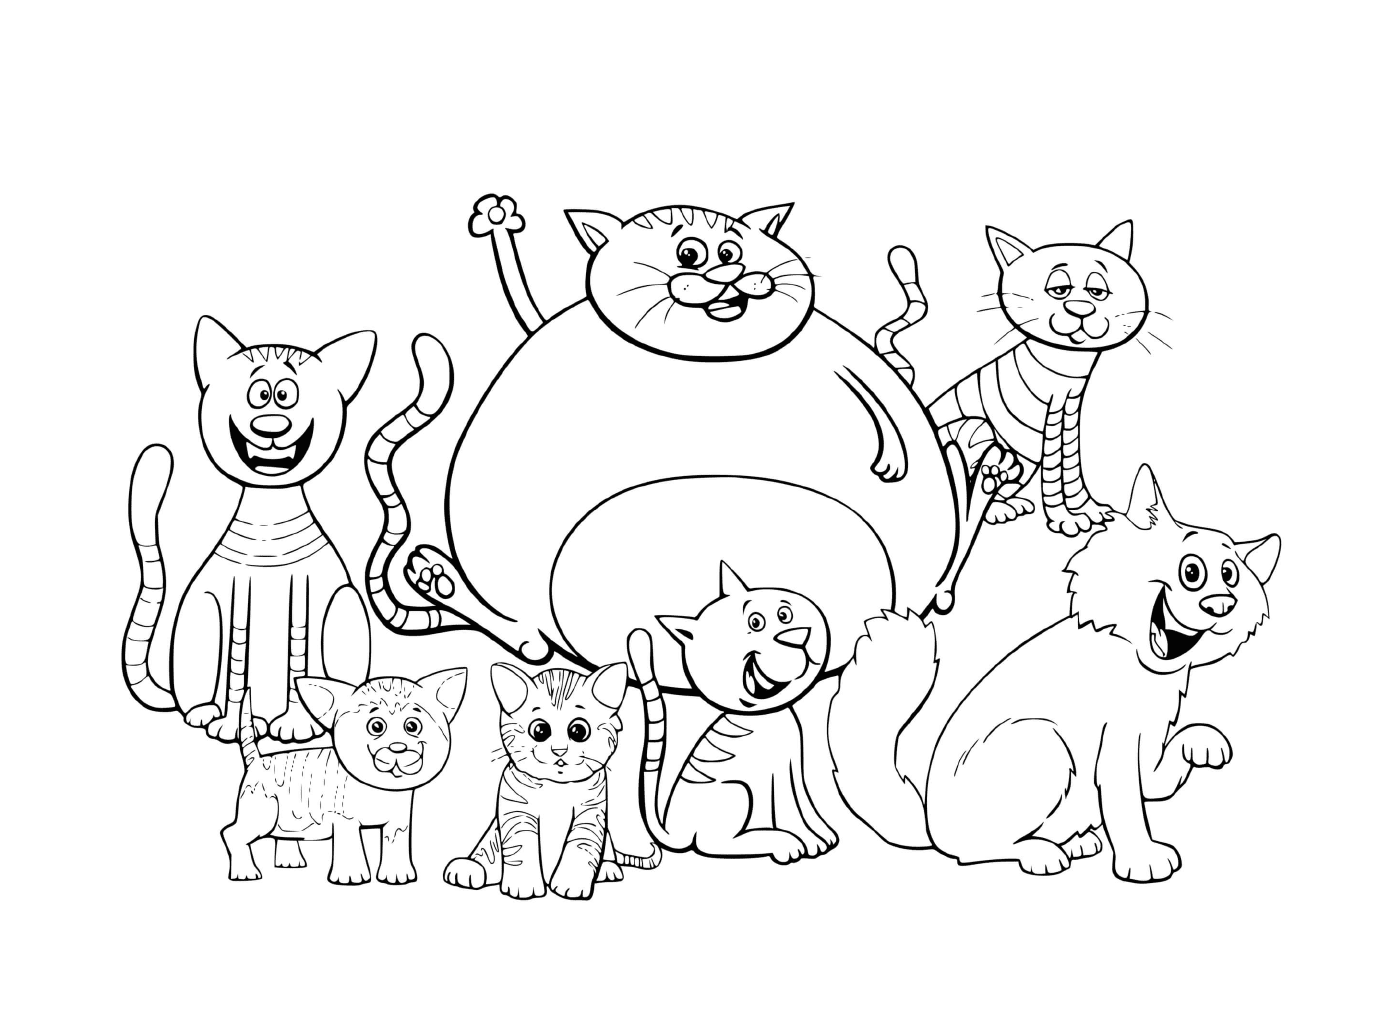  Gatos y gatitos de diferentes tamaños combinados 